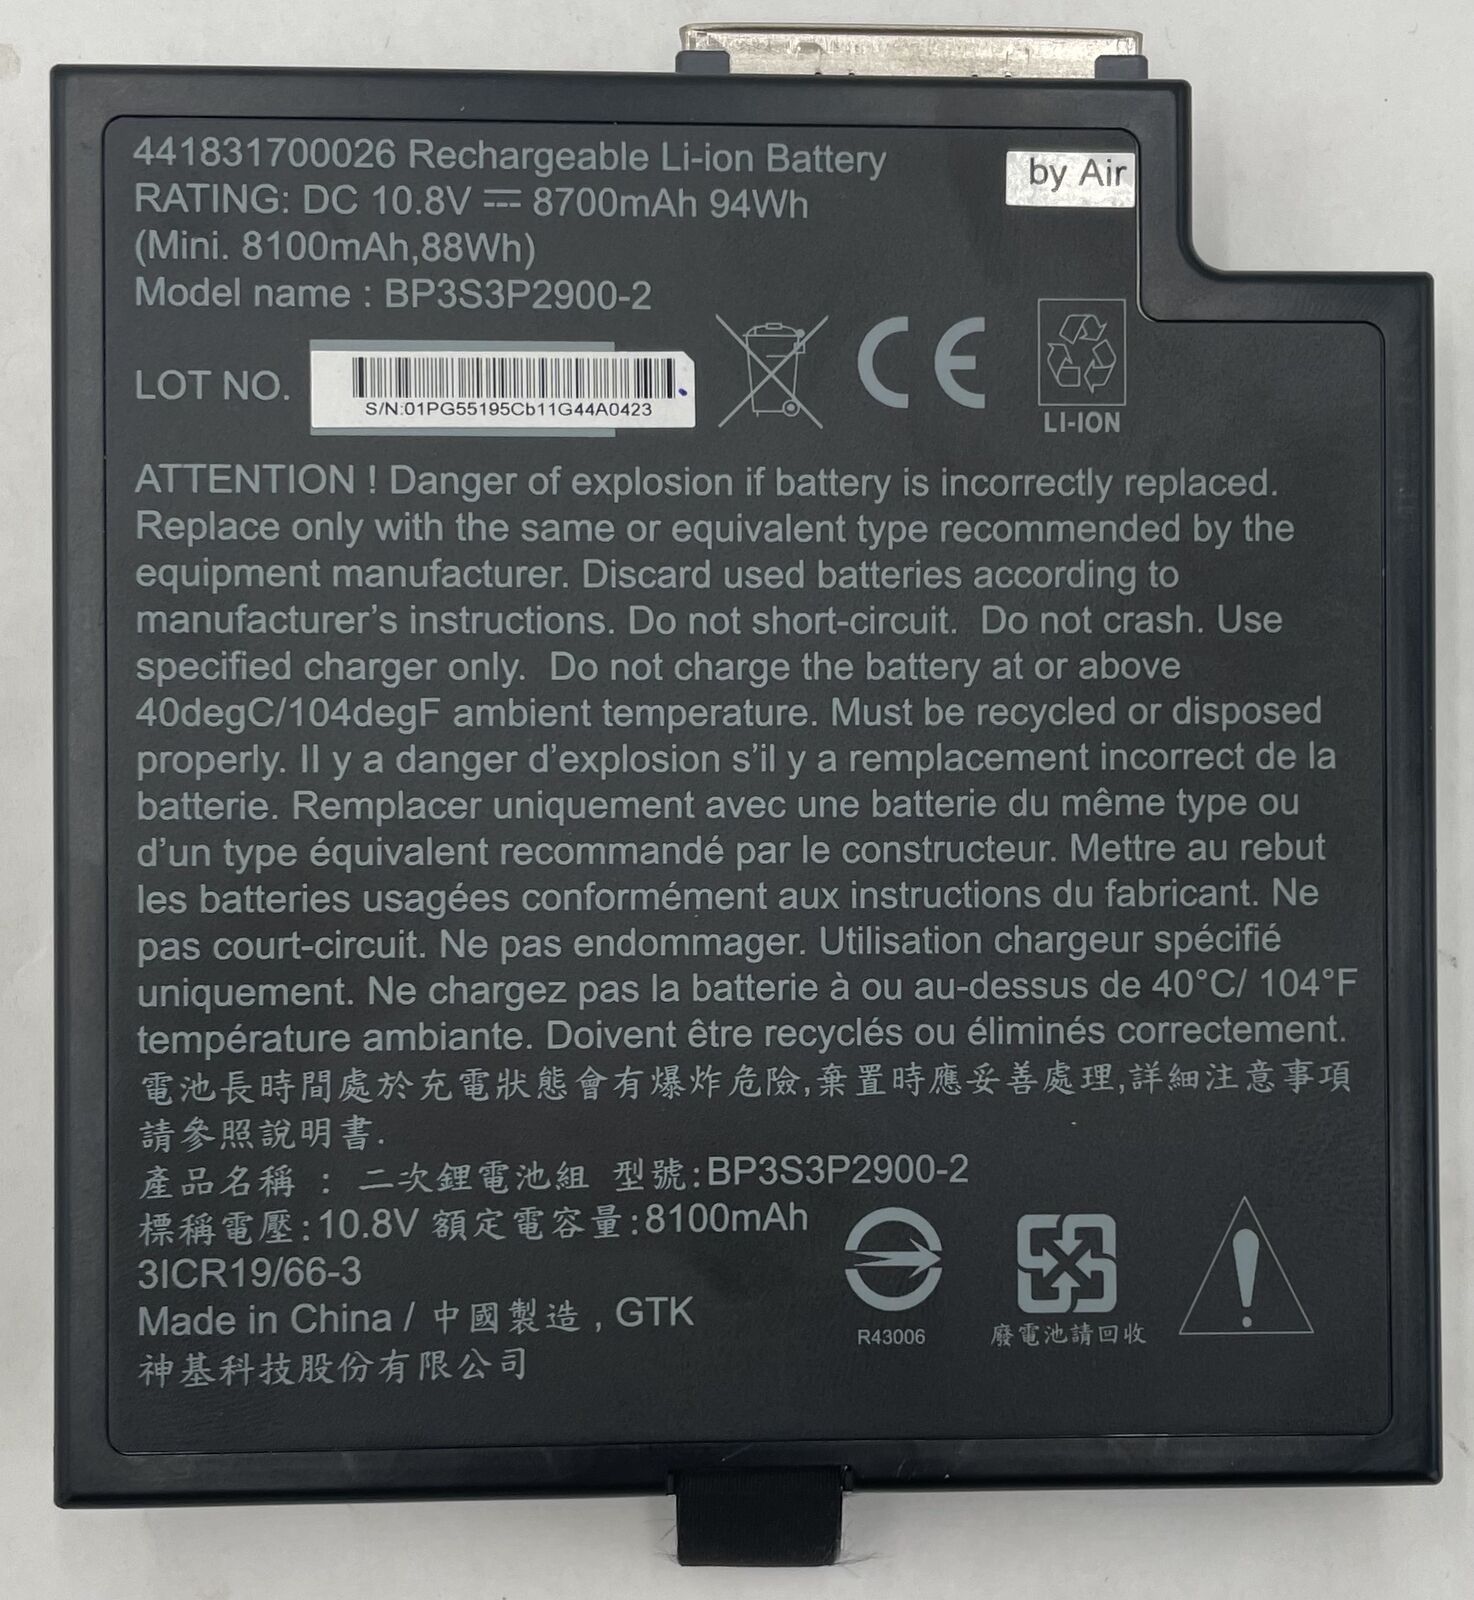 Getac BP3S3P2900-2 94Wh Rechargeable Li-Ion Laptop Battery- 441831700026